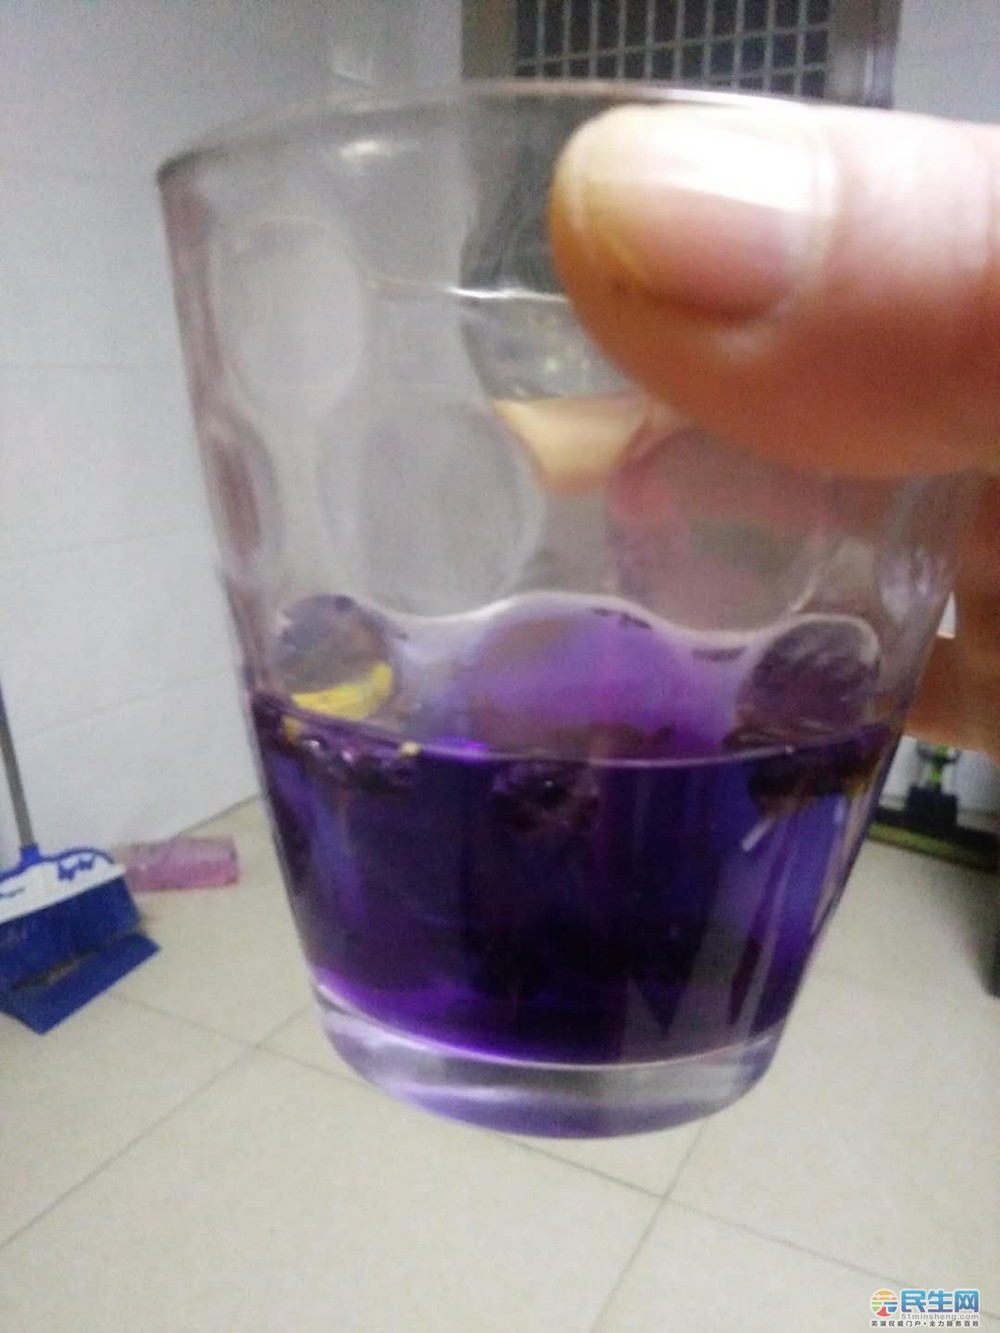 我妈网上买了黑枸杞,泡出来的水是蓝色紫色的,这是正常的吗?